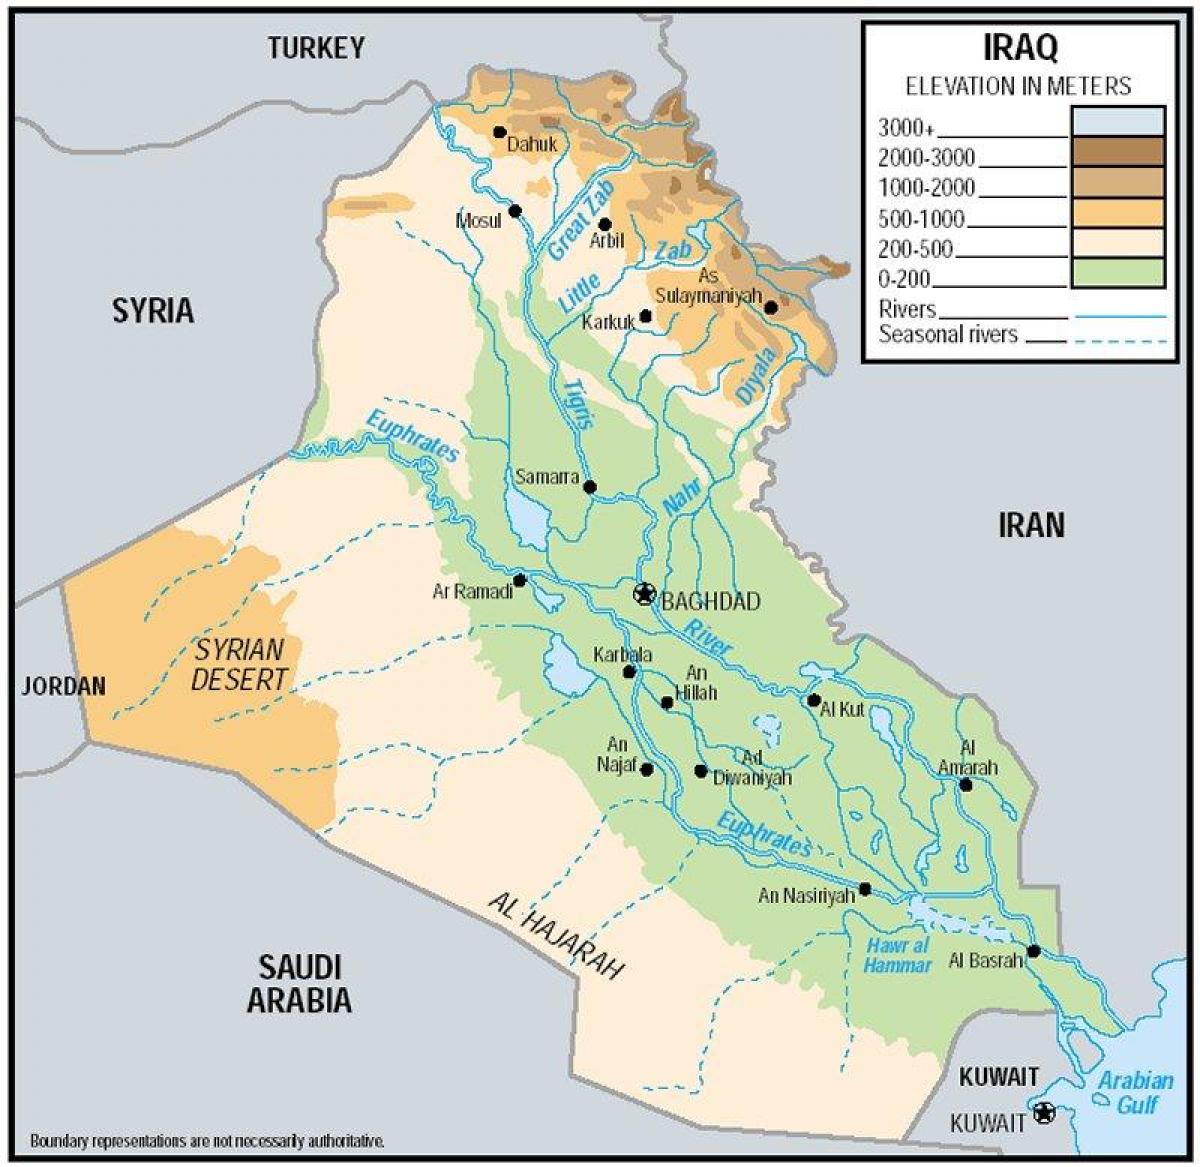 Зураг Ирак elevation